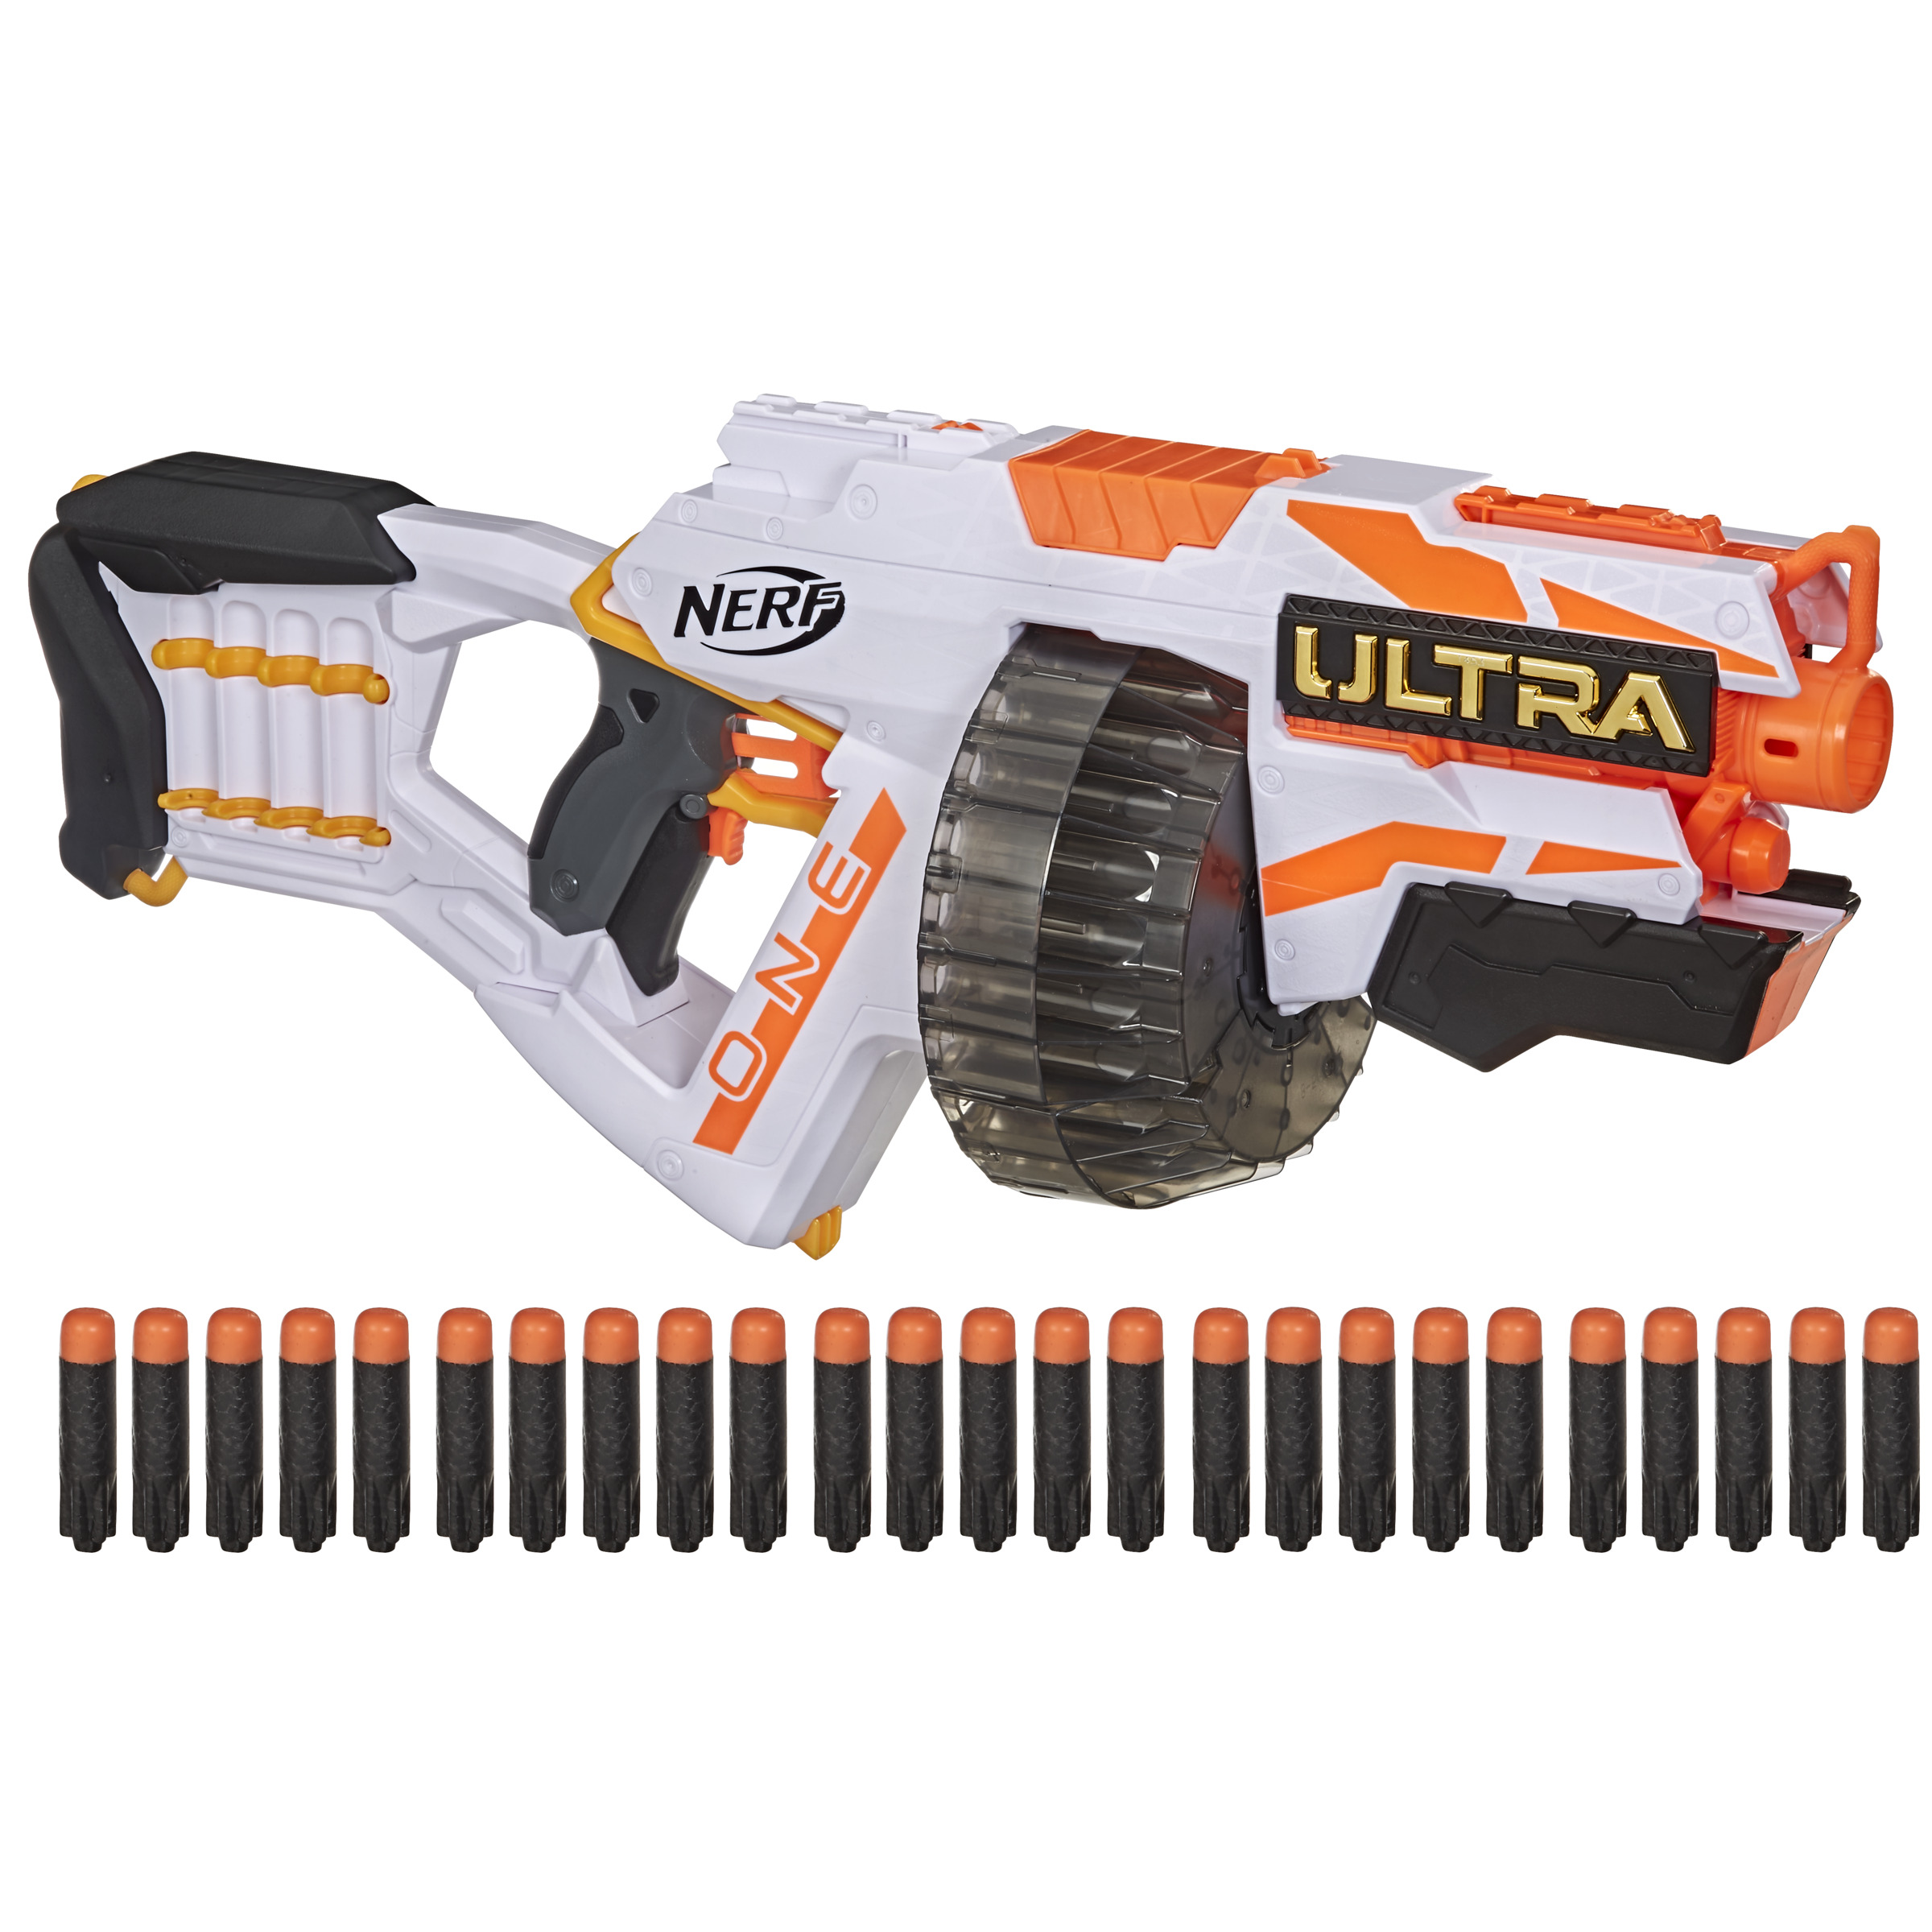 Motorized Ultra Blaster NERF Blaster One